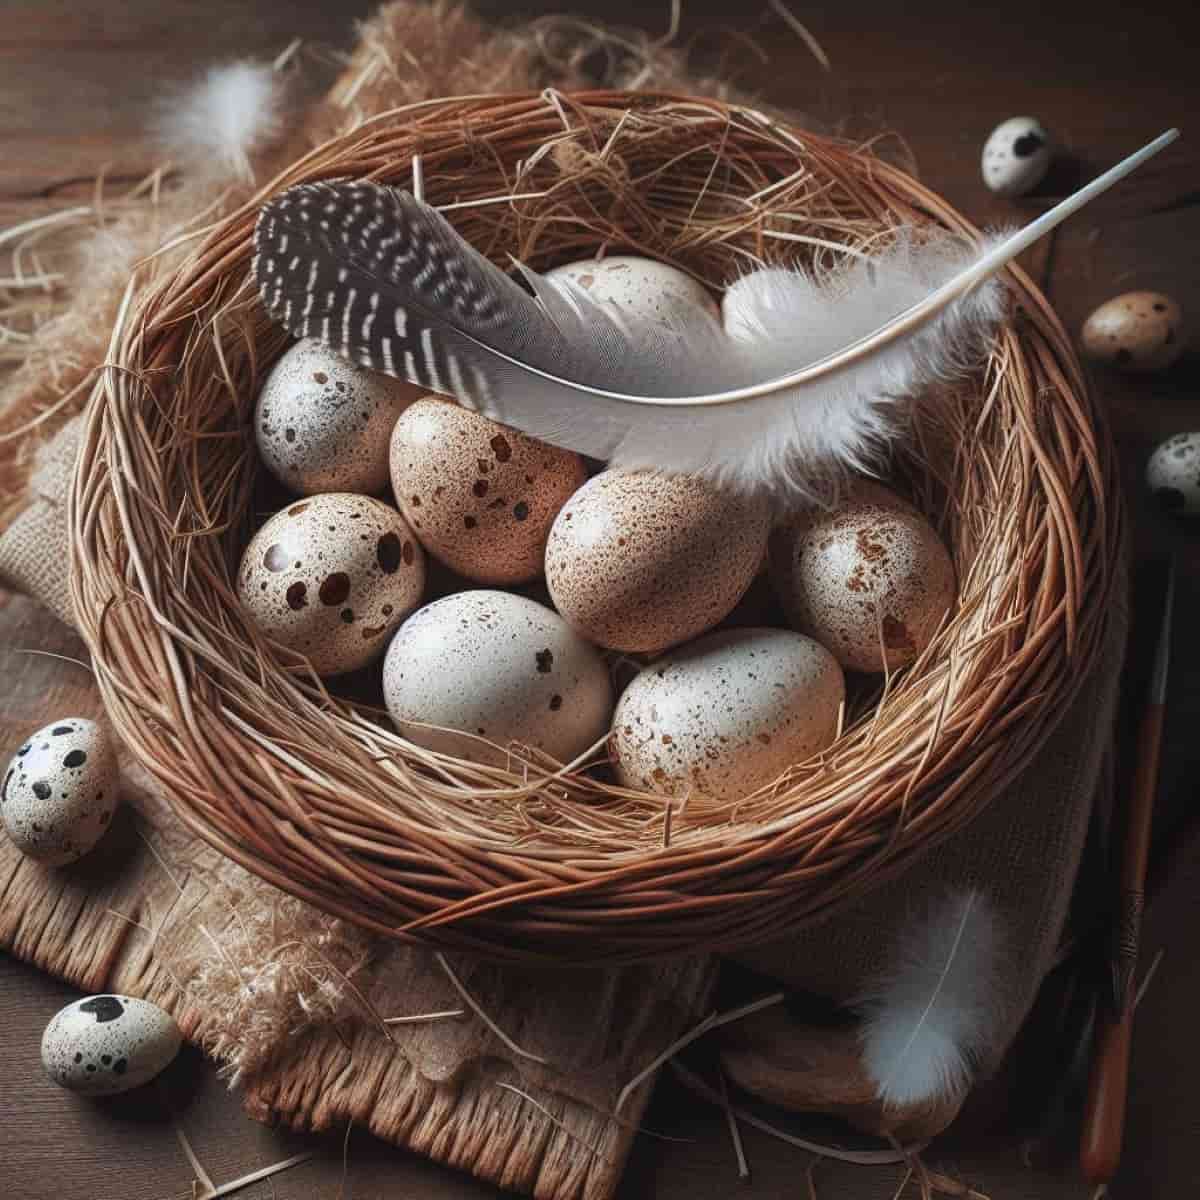 Turkey Eggs in Basket